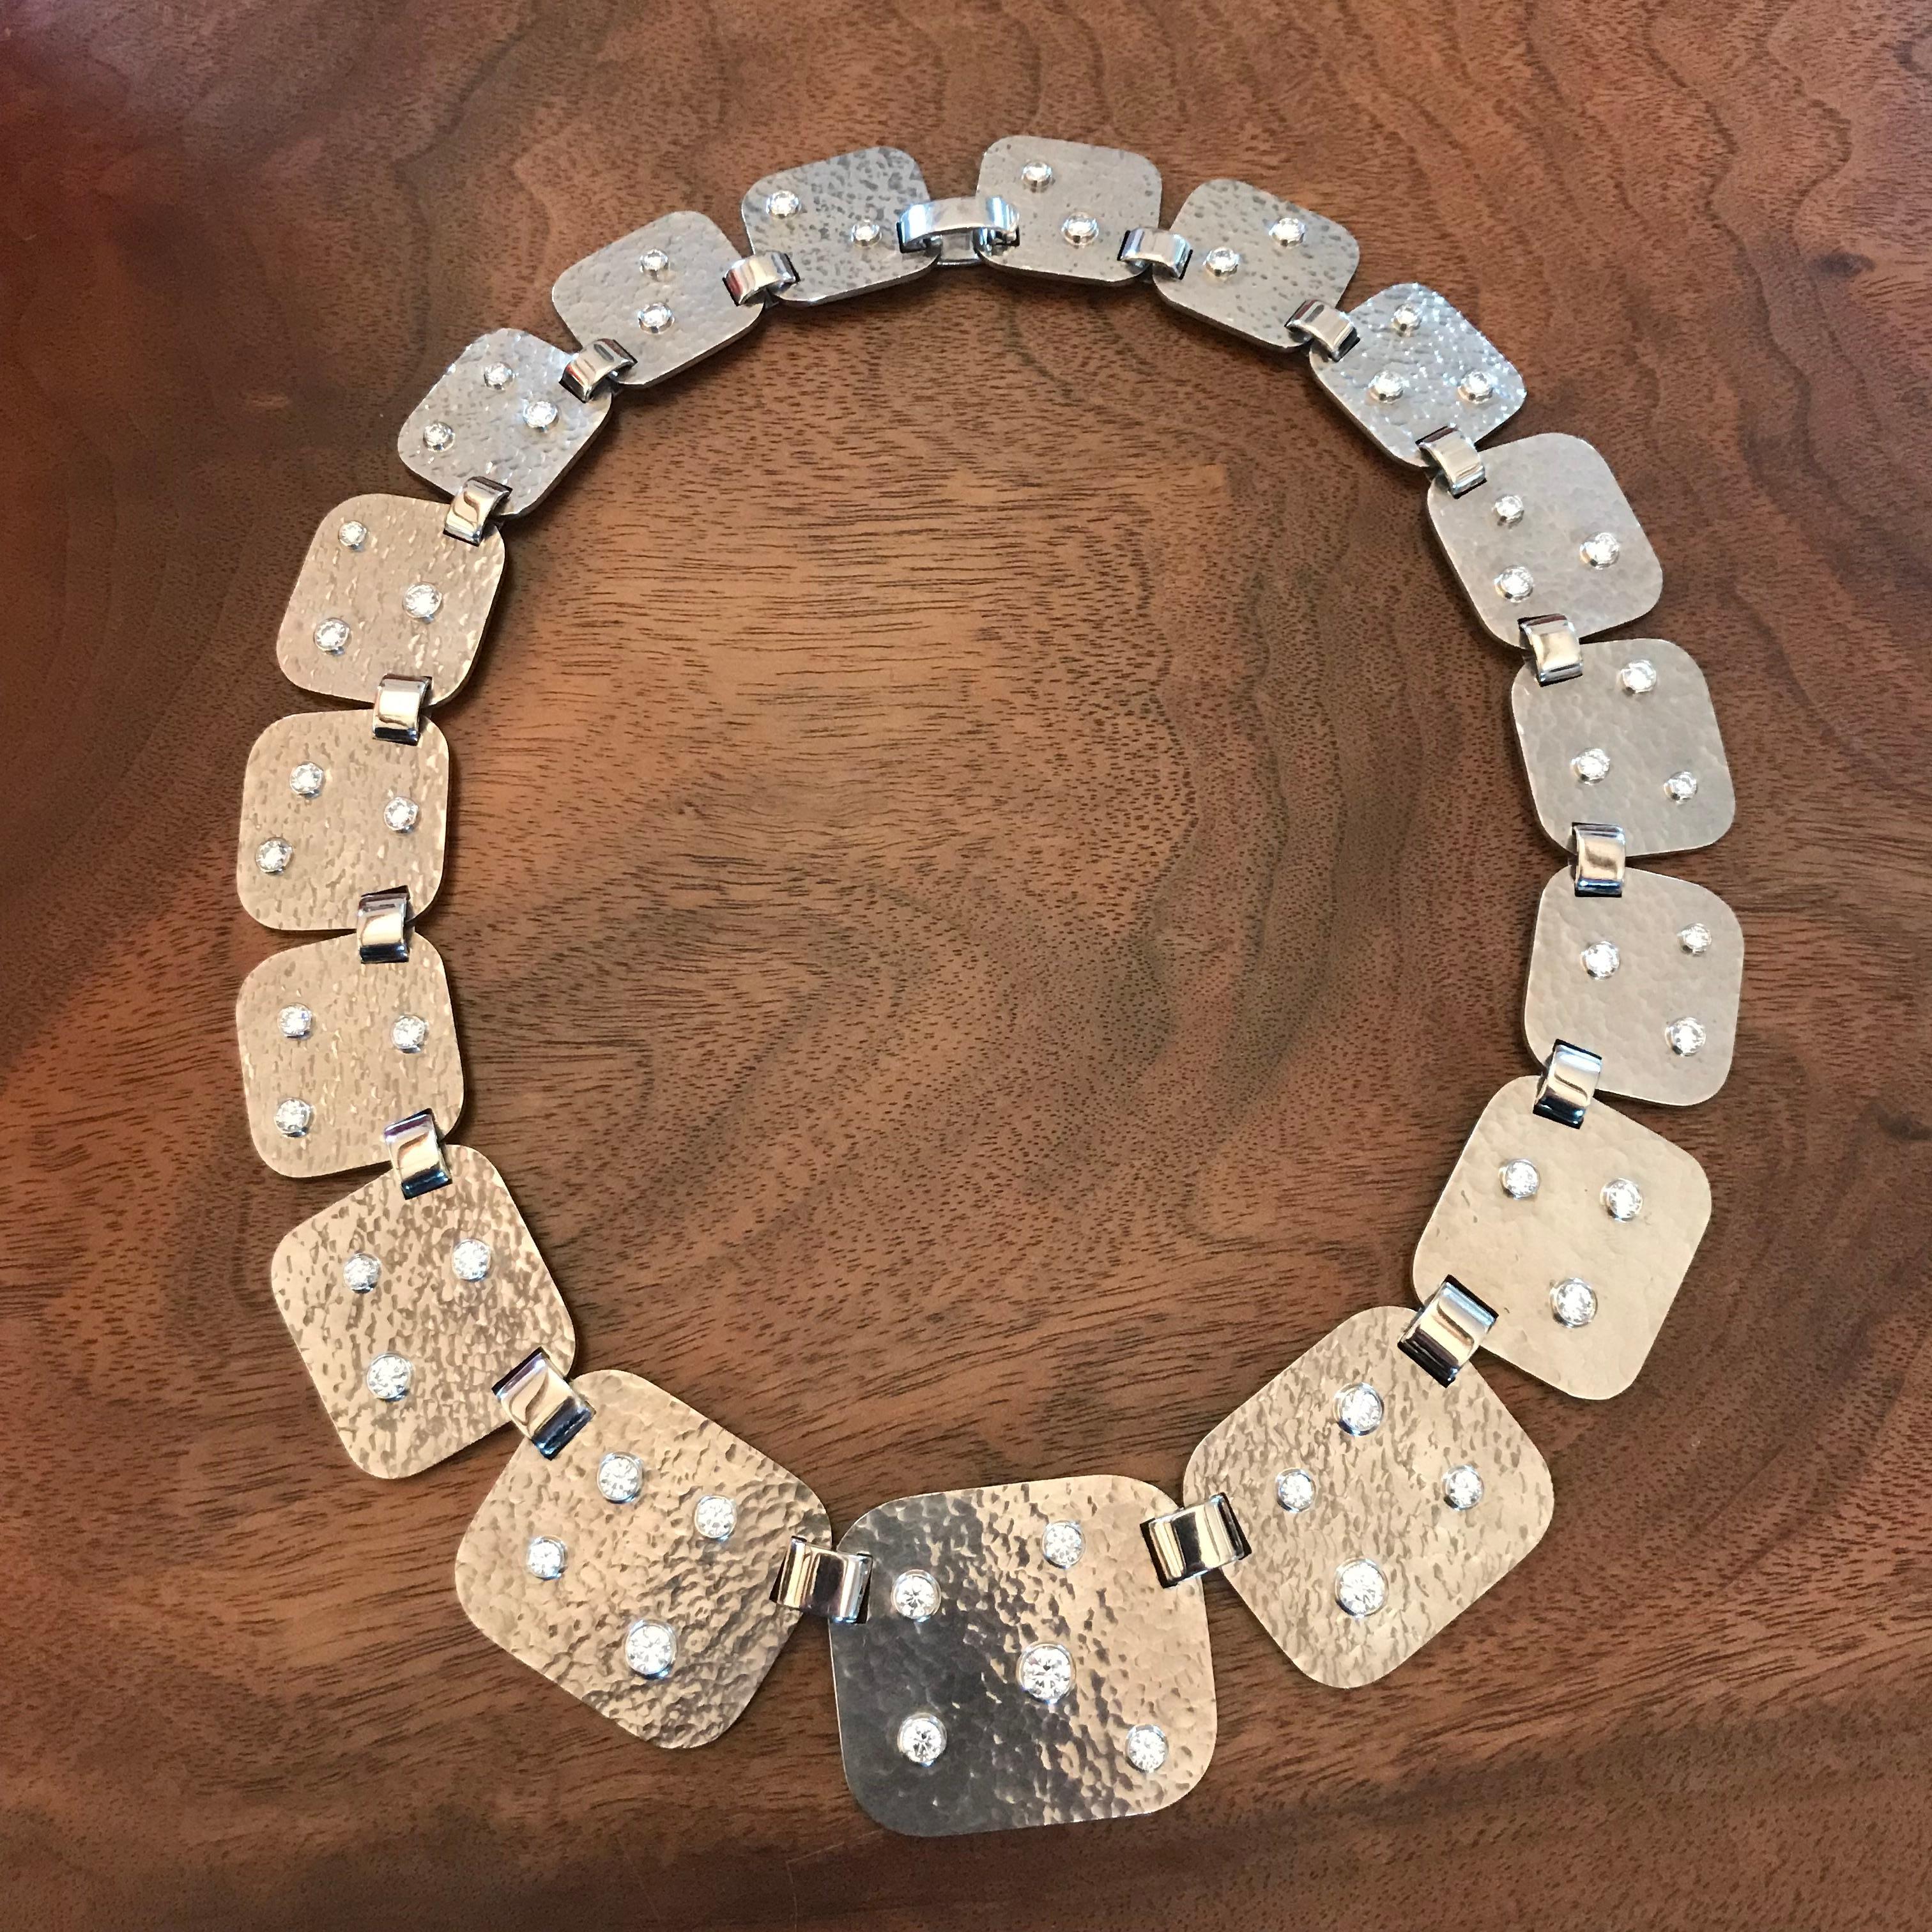 Un extraordinaire collier en or blanc martelé de grande classe avec 51 diamants taille brillant 8,87 ct TW/SI. La taille de chaque segment varie entre 23 et 39 mm.
Ce collier de 46 mm de long est un bijou unique conçu par Colleen B. Rosenblat.
